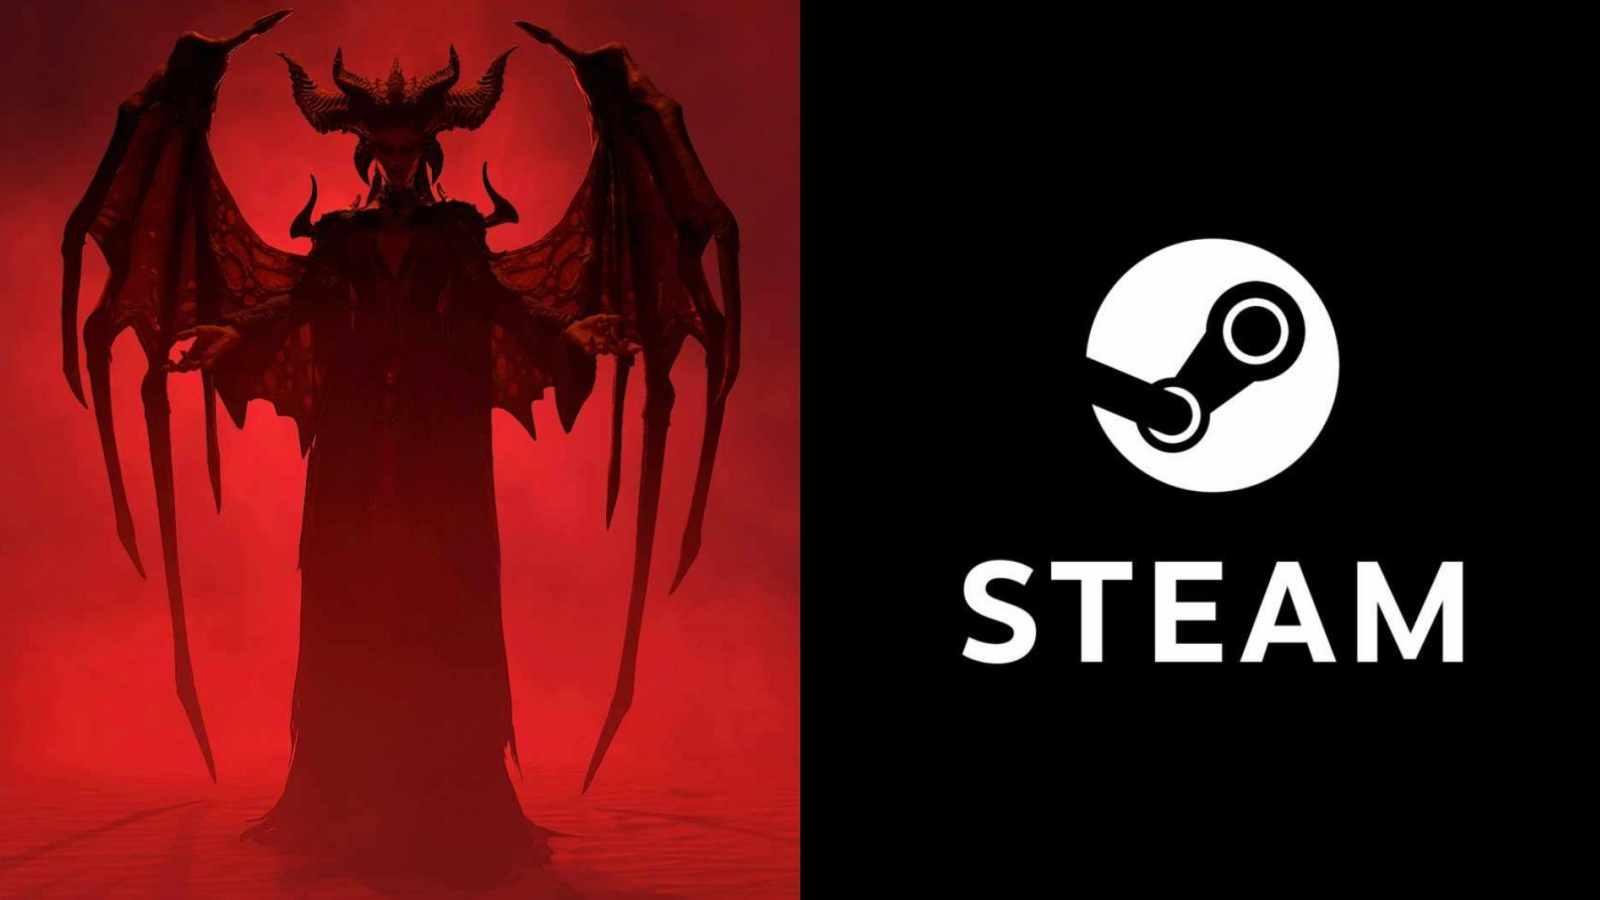 Diablo 4 Is Coming To Steam In 2 Weeks